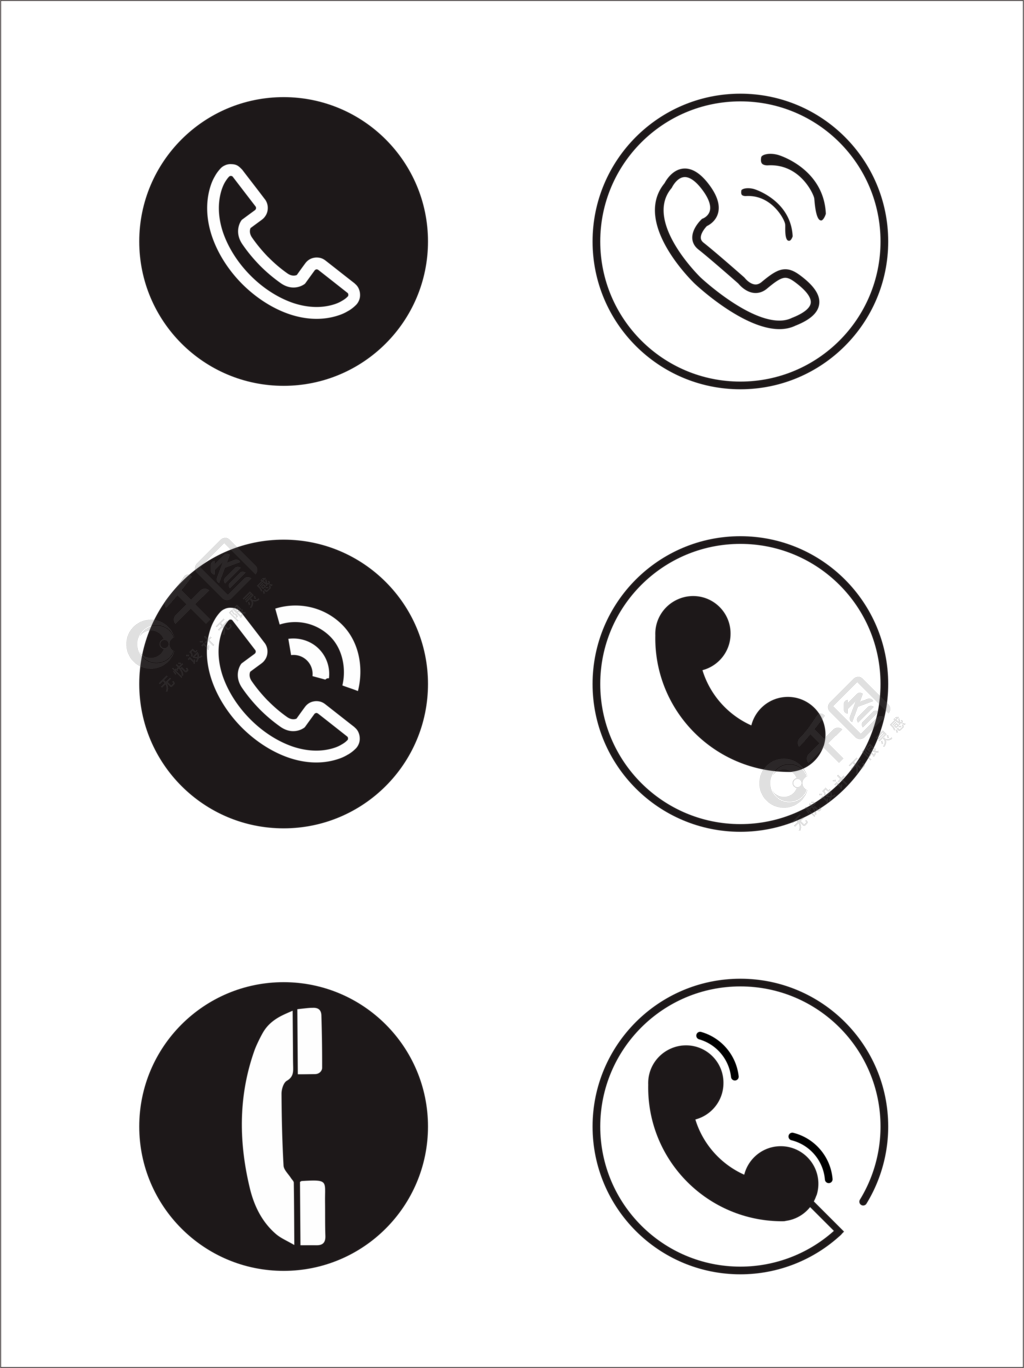 公共电话标志标识设计矢量素材